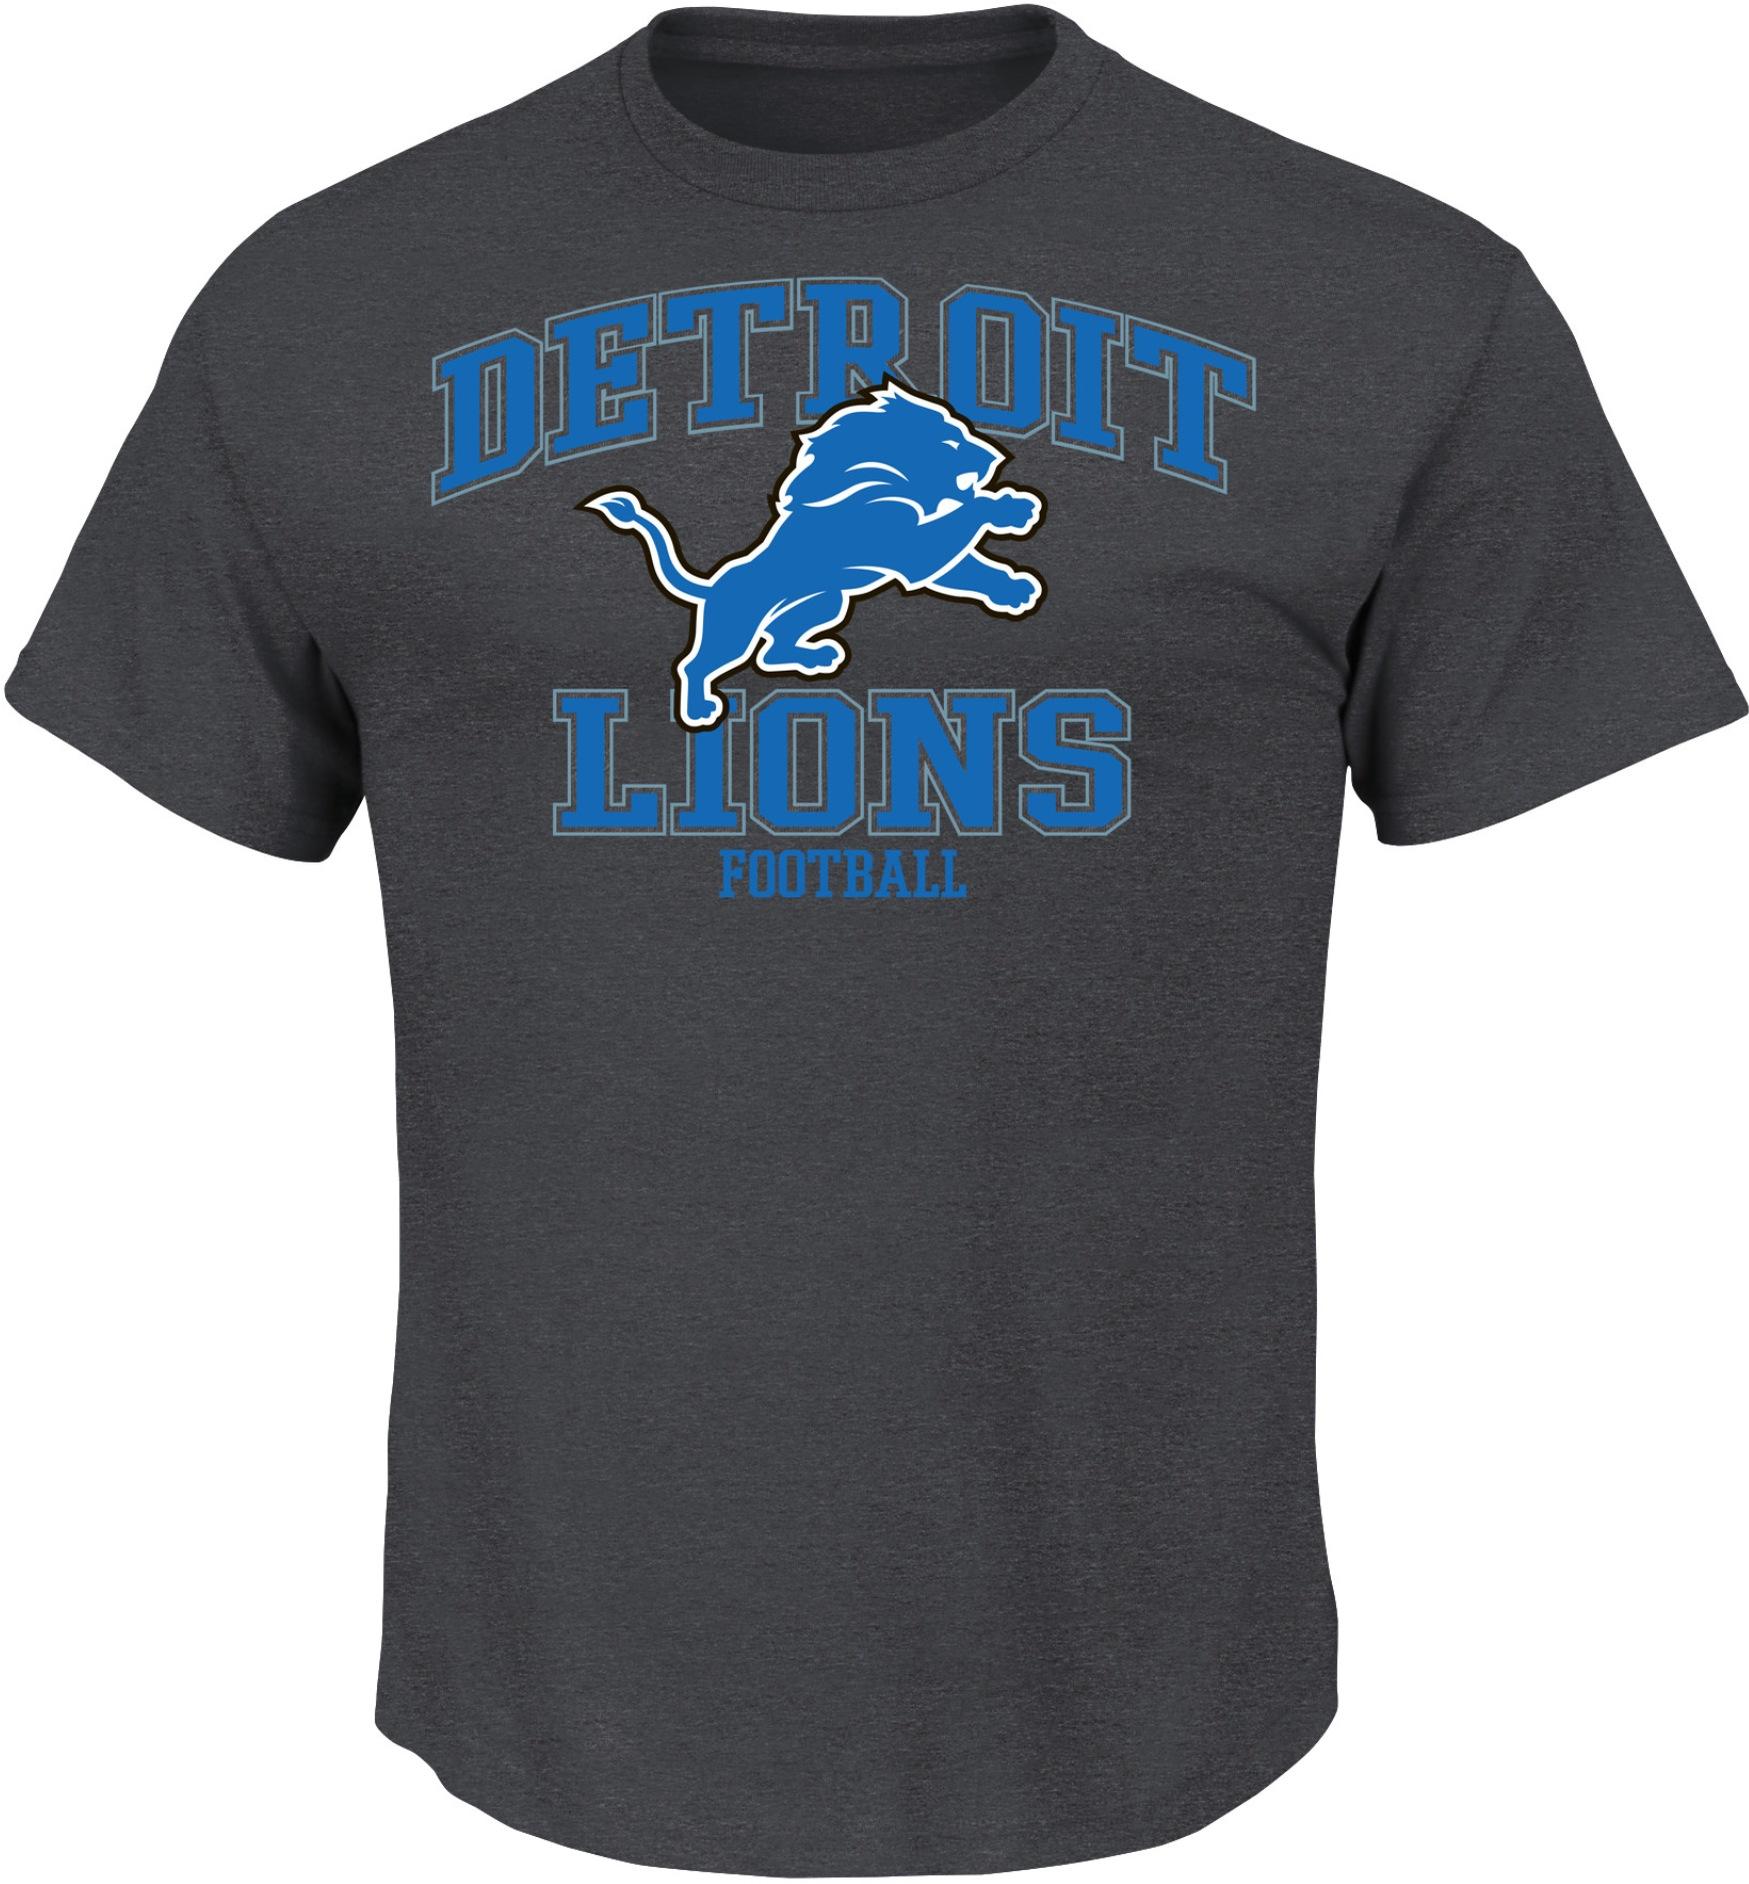 NFL Men's T-Shirt - Detroit Lions - Kmart